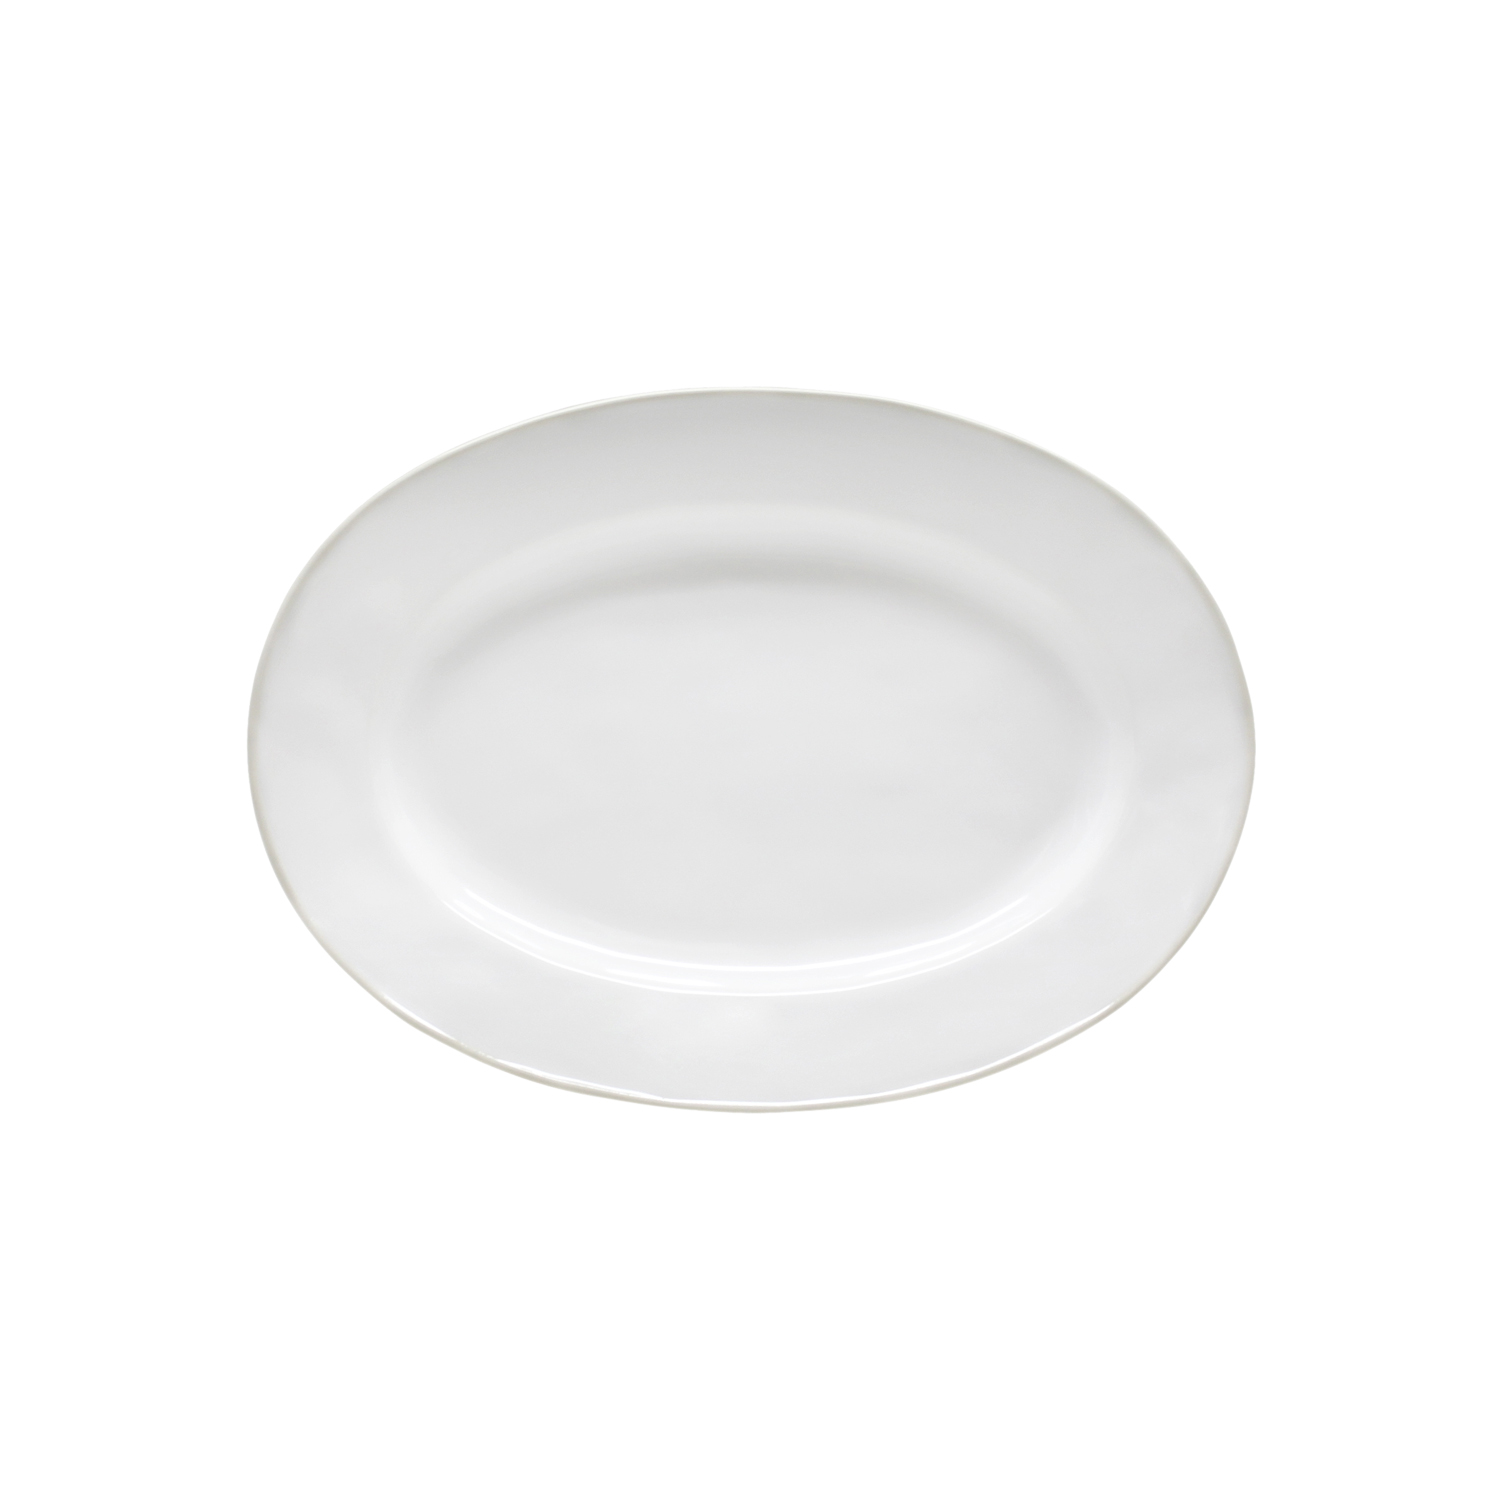 Astoria White Oval Platter Medium 30cm Gift